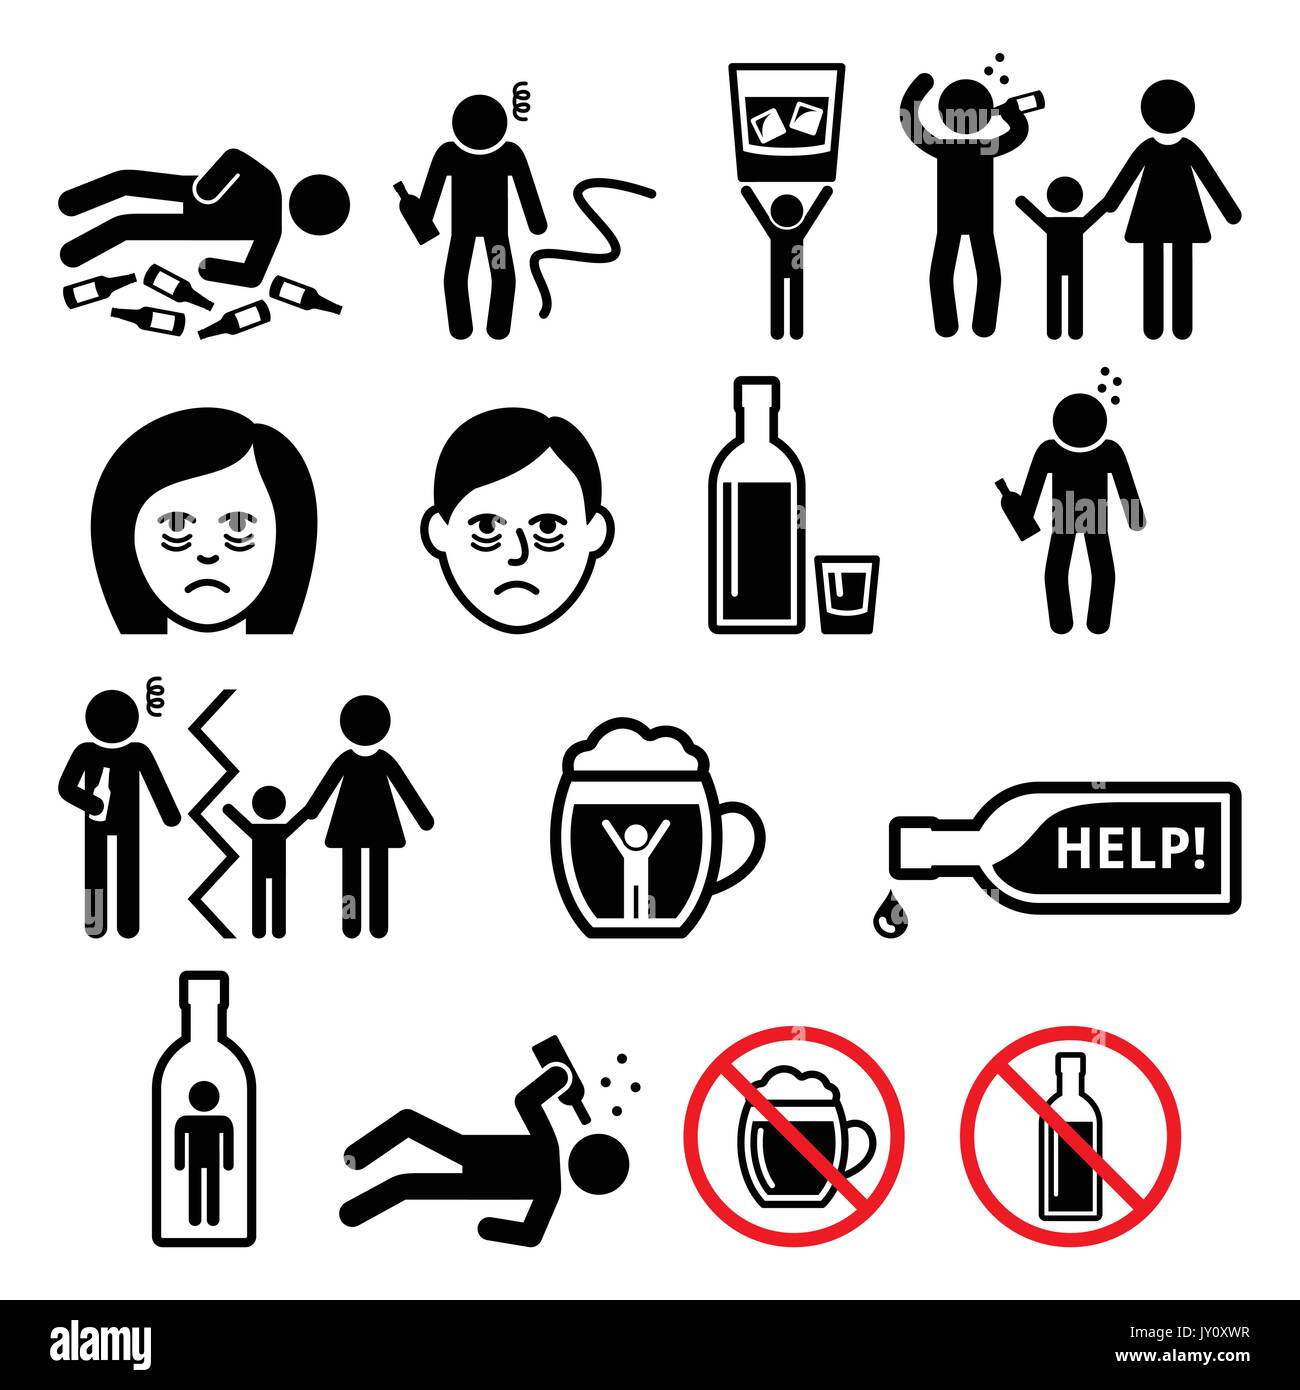 Alkoholismus, betrunkener Mann, Symbole für Alkoholsucht Vektor-Symbole gesetzt - Menschen, die Probleme mit dem Trinken, Alkoholmissbrauch haben Stock Vektor